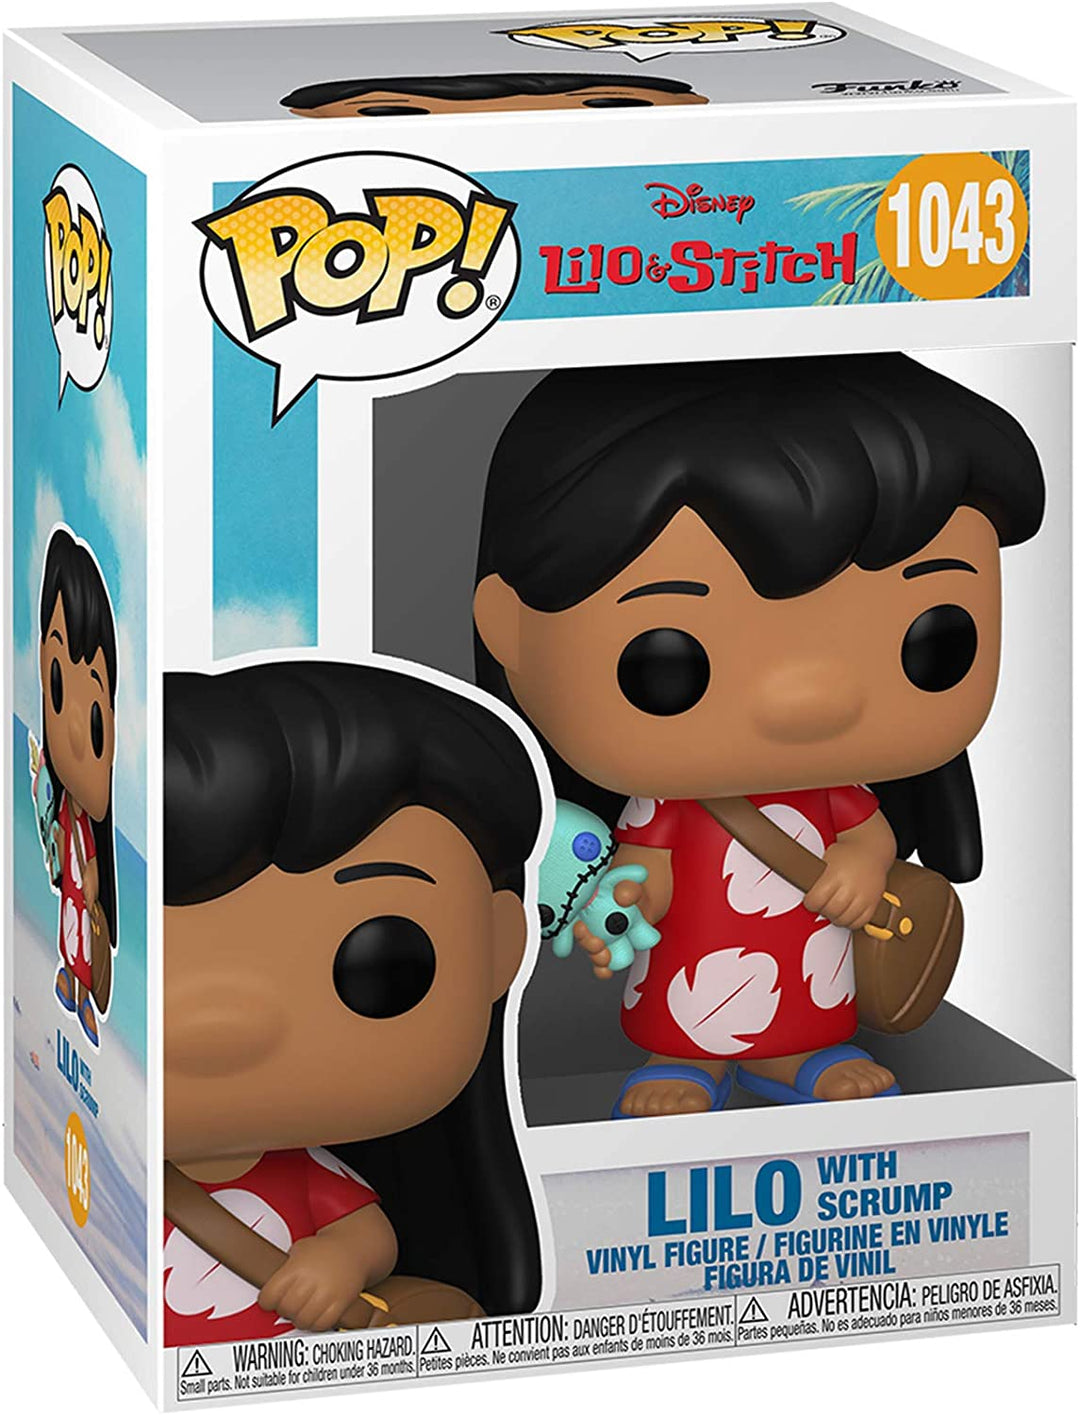 Funko Pop! Disney: Lilo & Stitch- Lilo with Scrump Vinyl Figure